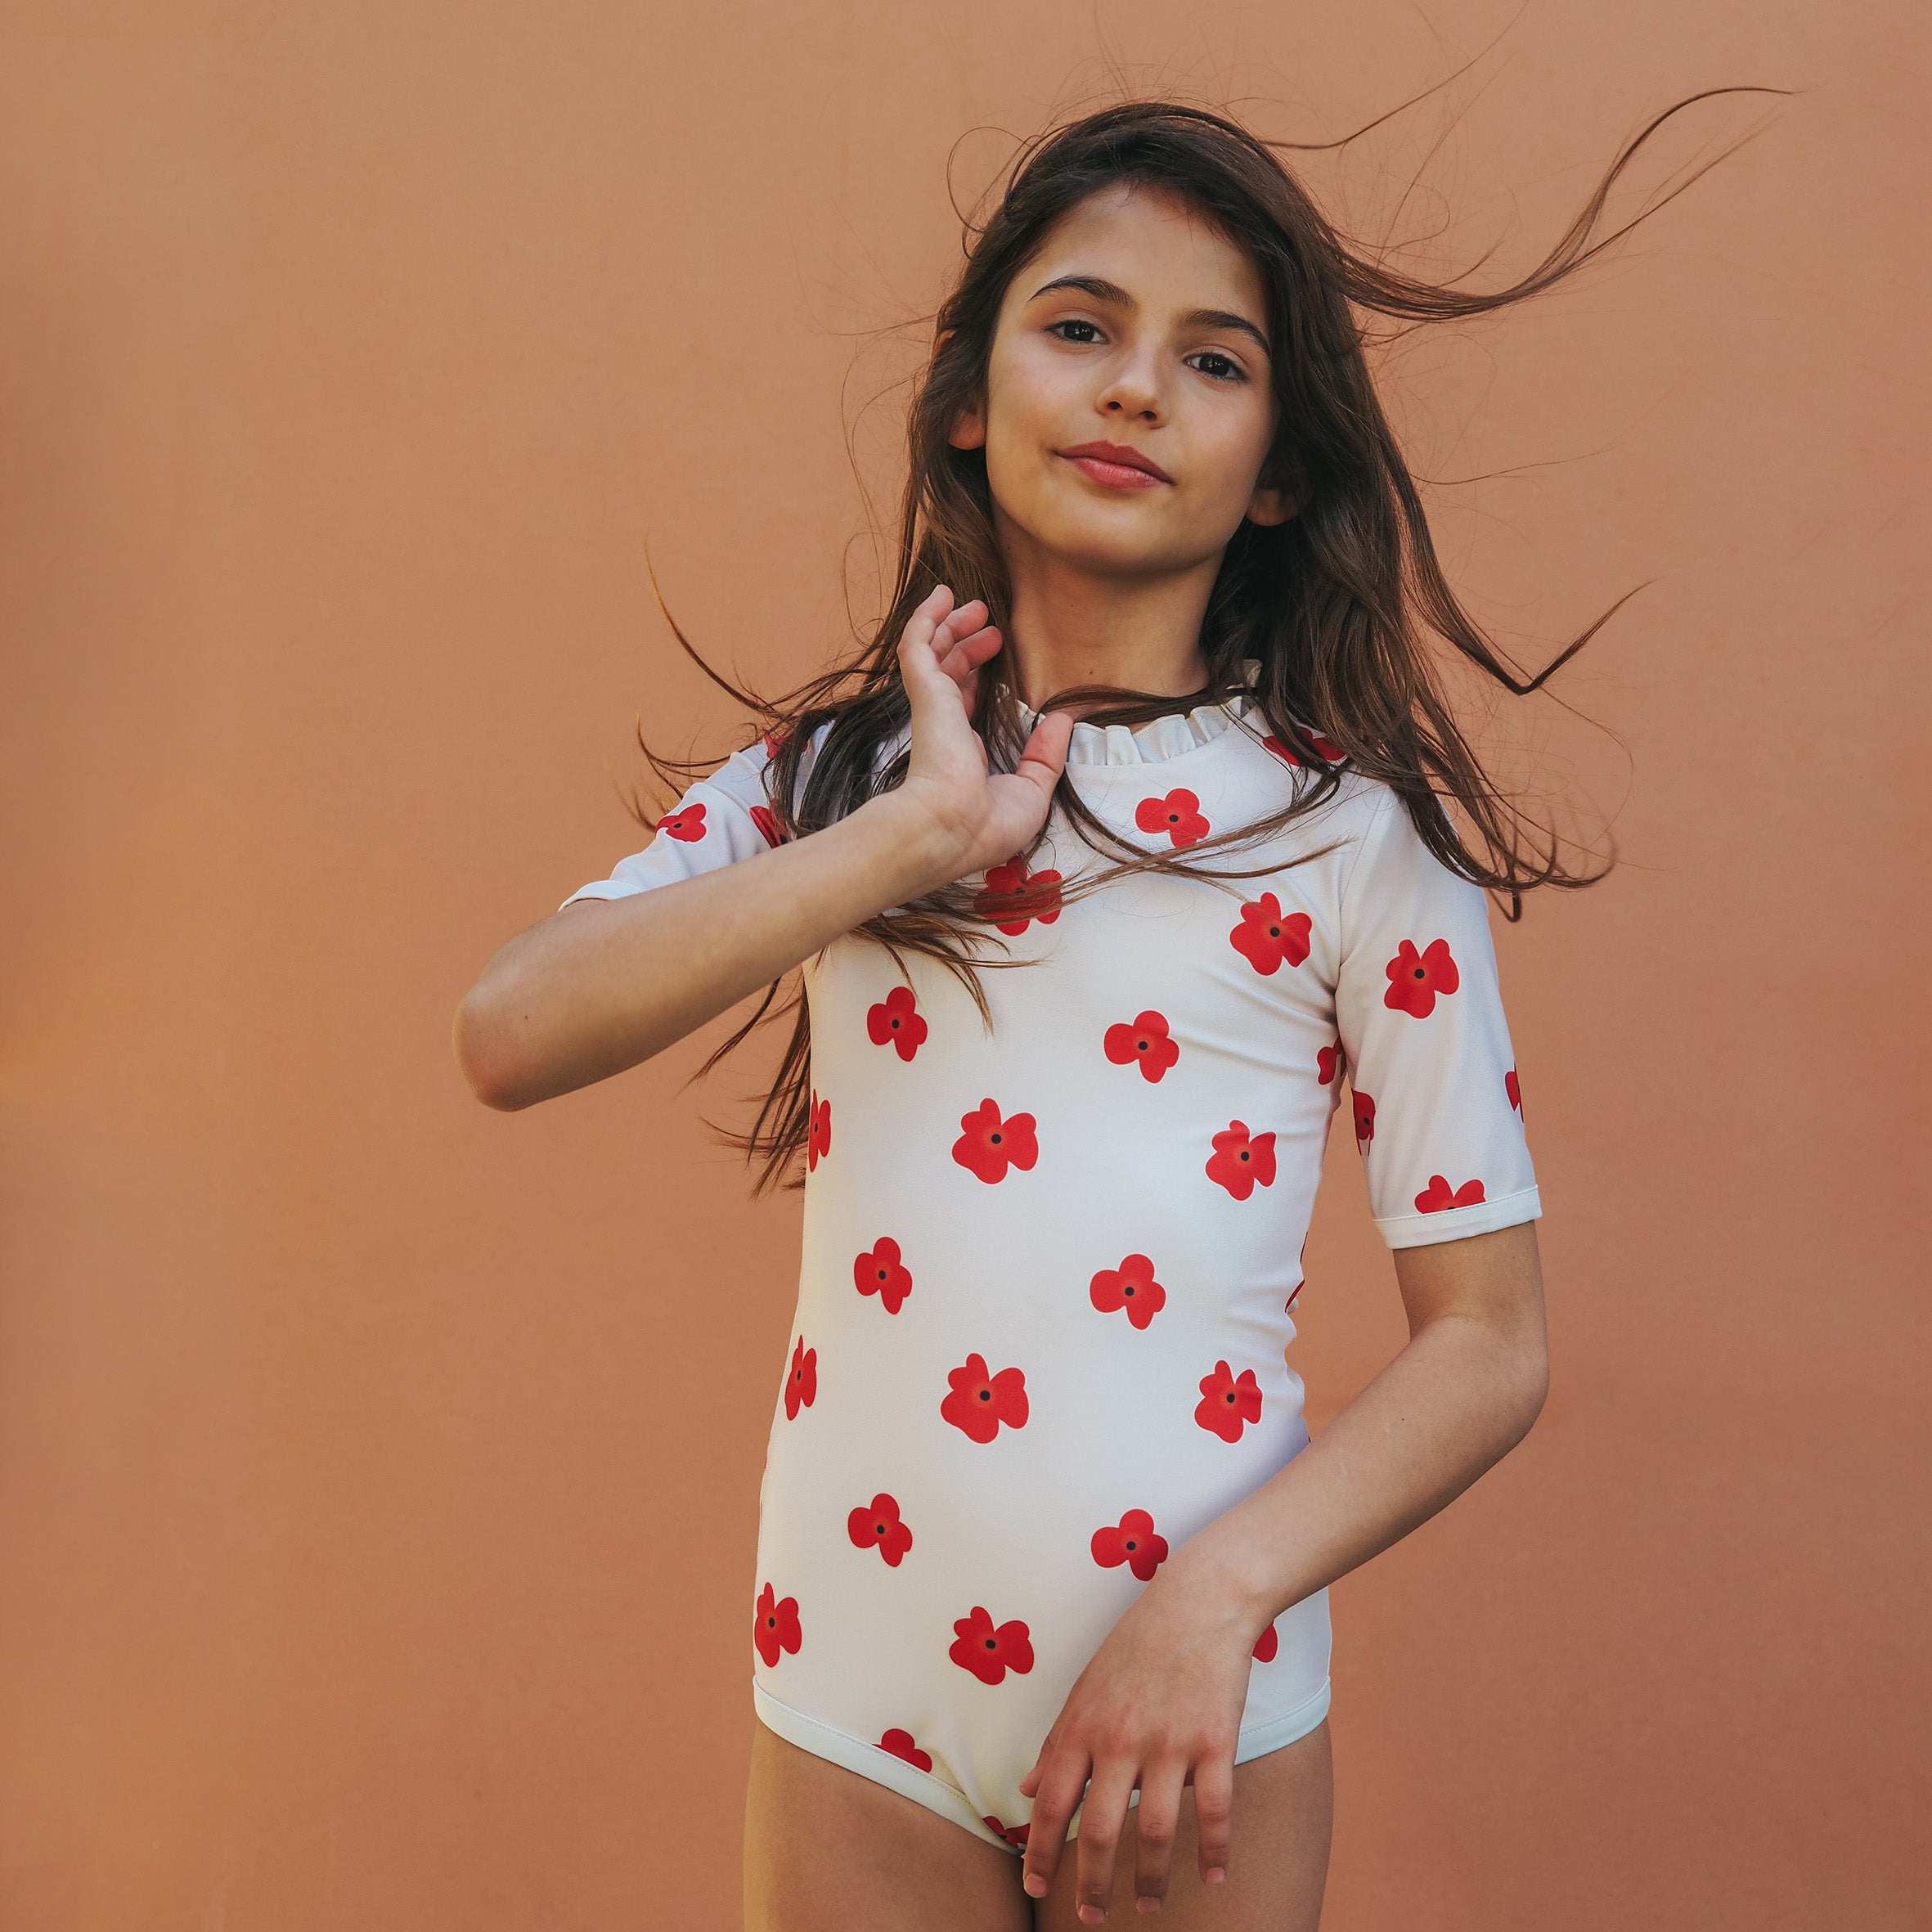 Mädchen UV Badeanzug Ruffle Siena - Rote Blumen